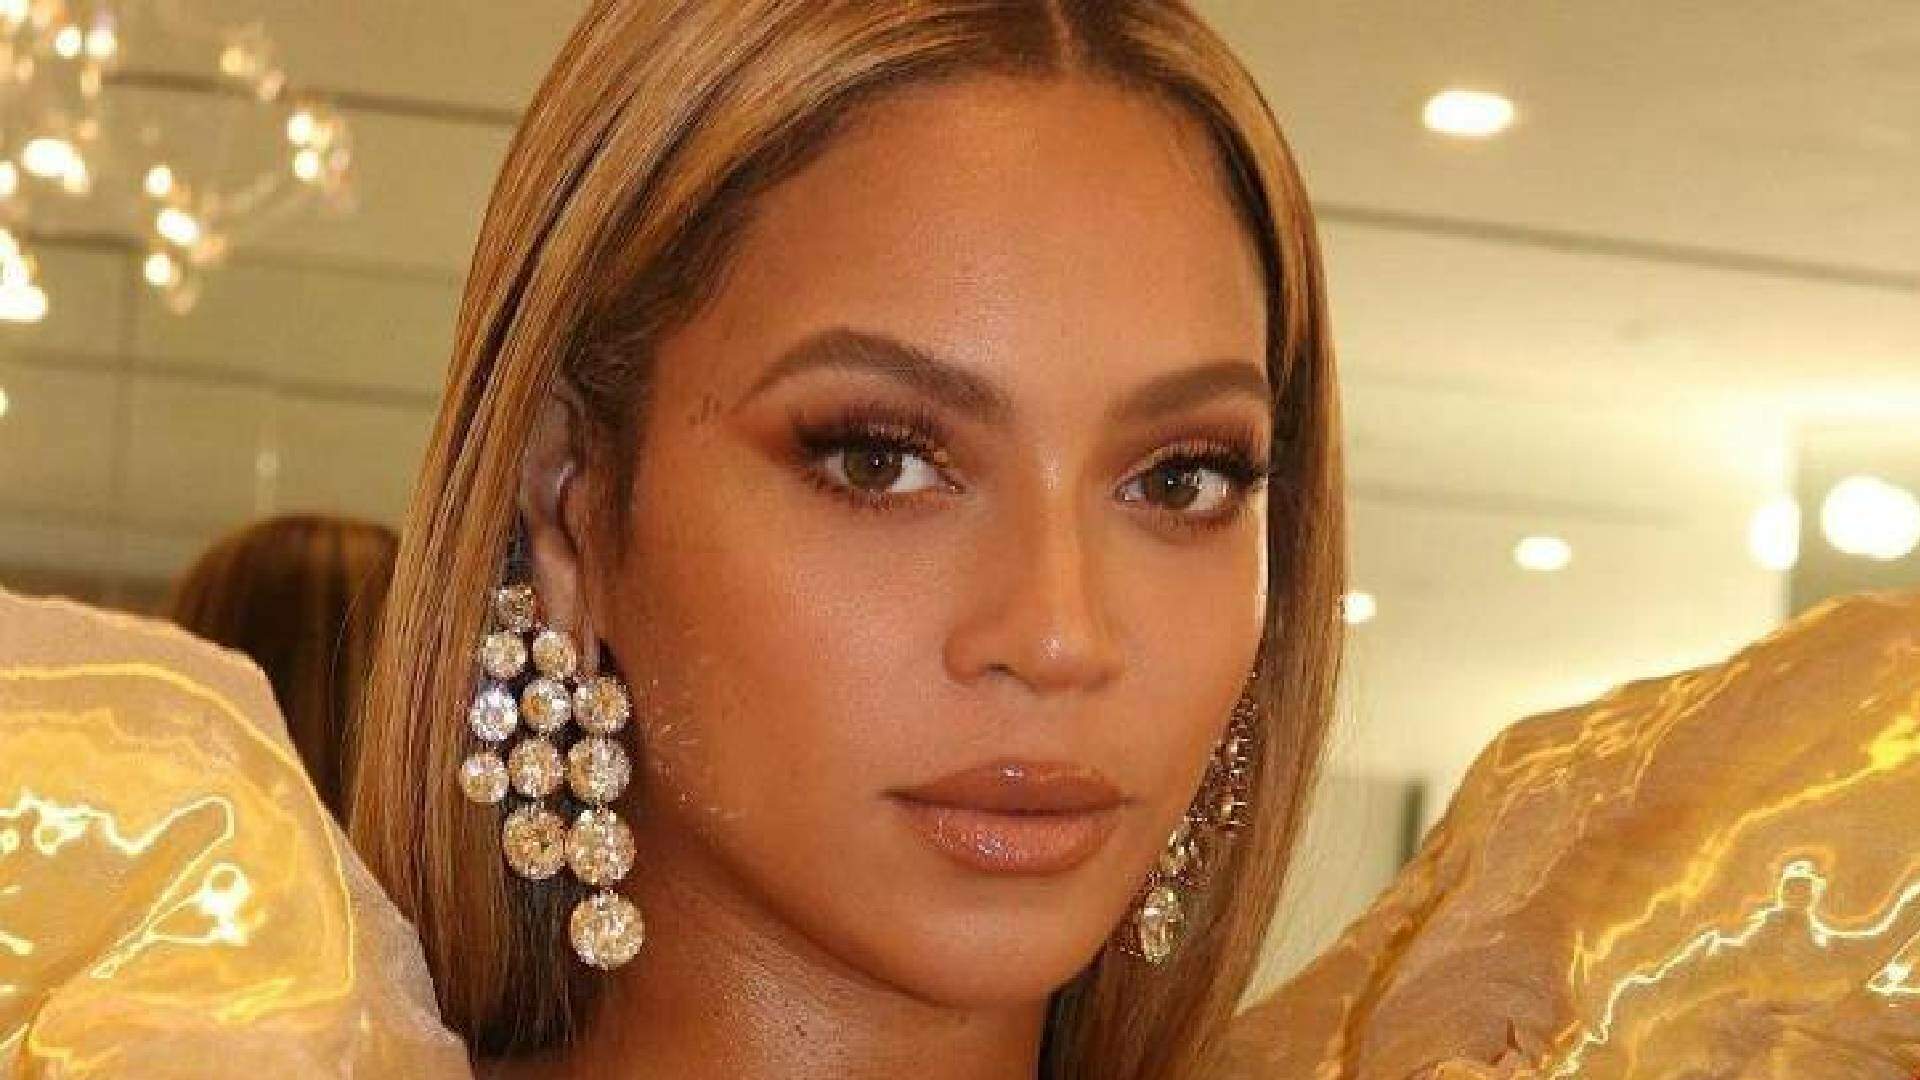 Ao promover lançamento de novo álbum, Beyoncé posta foto especial e detalhe rouba a cena - Metropolitana FM